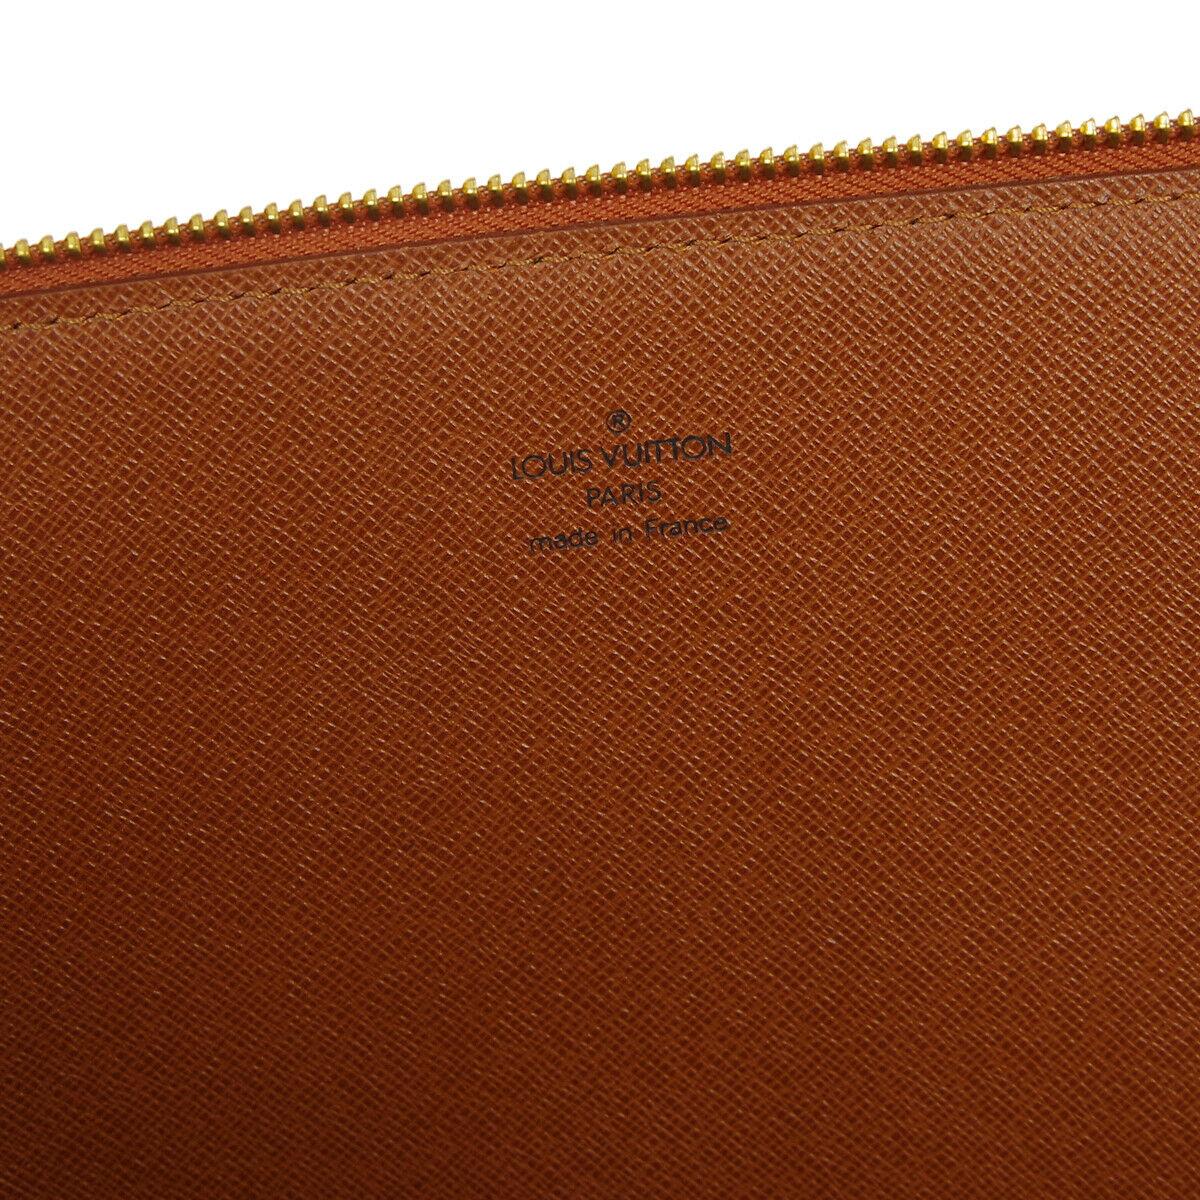 Louis Vuitton Epi Cognac Men's Women's Carryall Laptop Travel Brief Clutch Bag 3